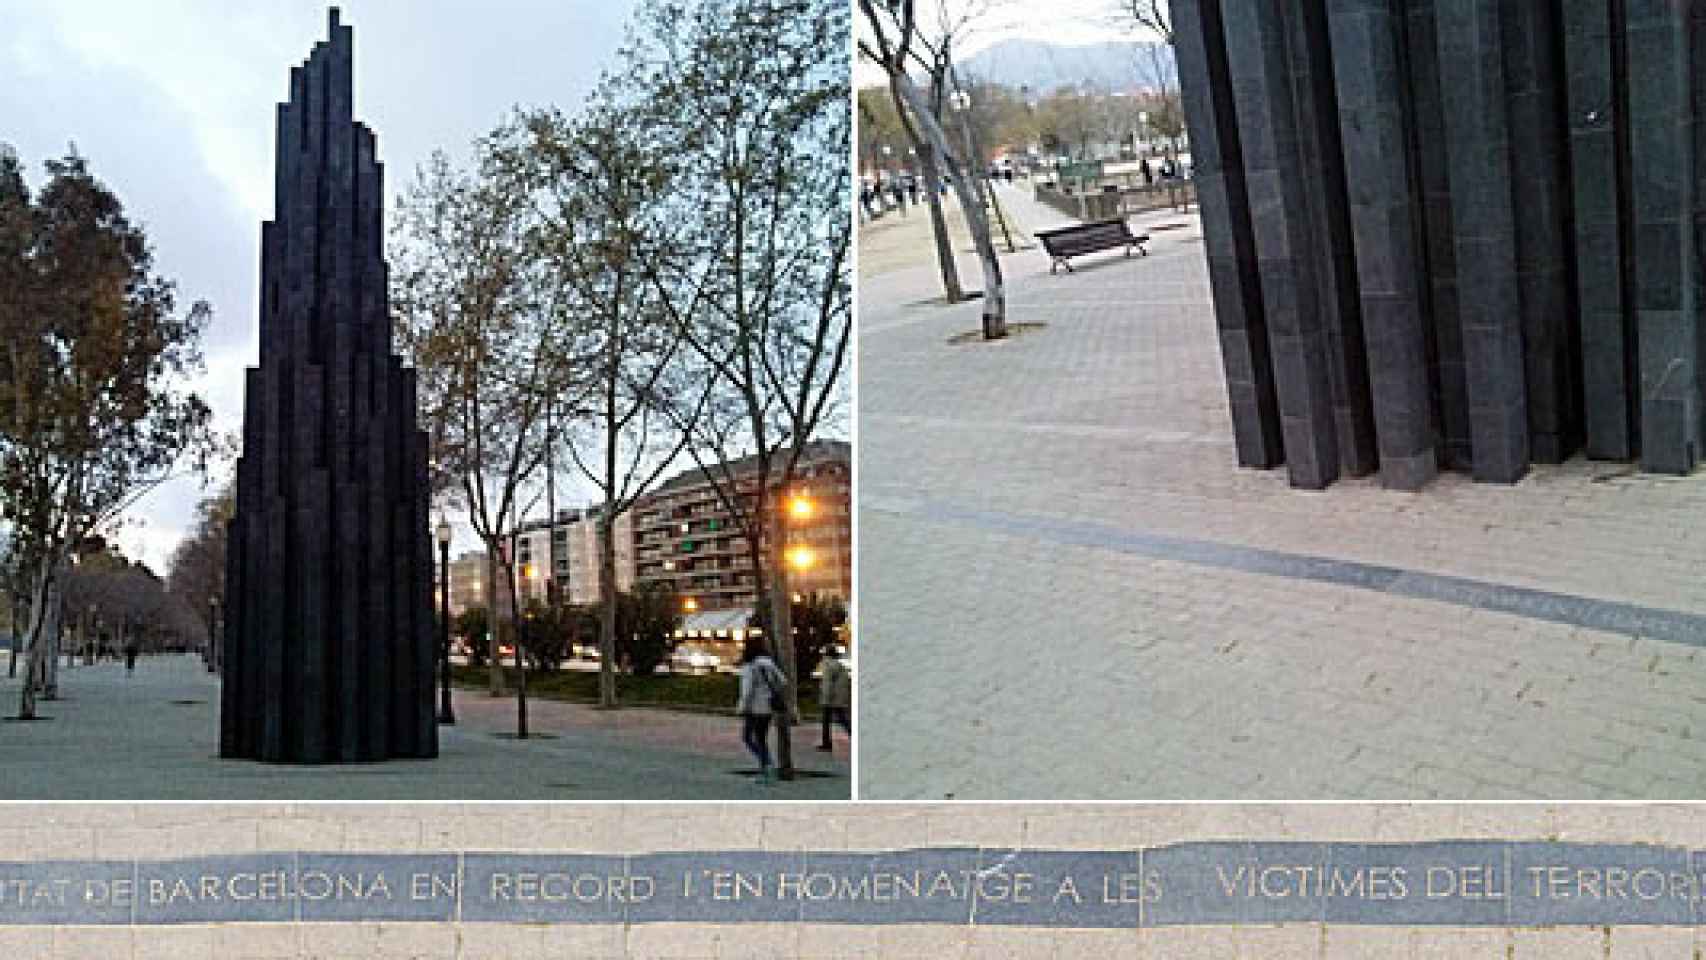 Monumento del Ayuntamiento de Barcelona en recuerdo y homenaje a las víctimas del terrorismo